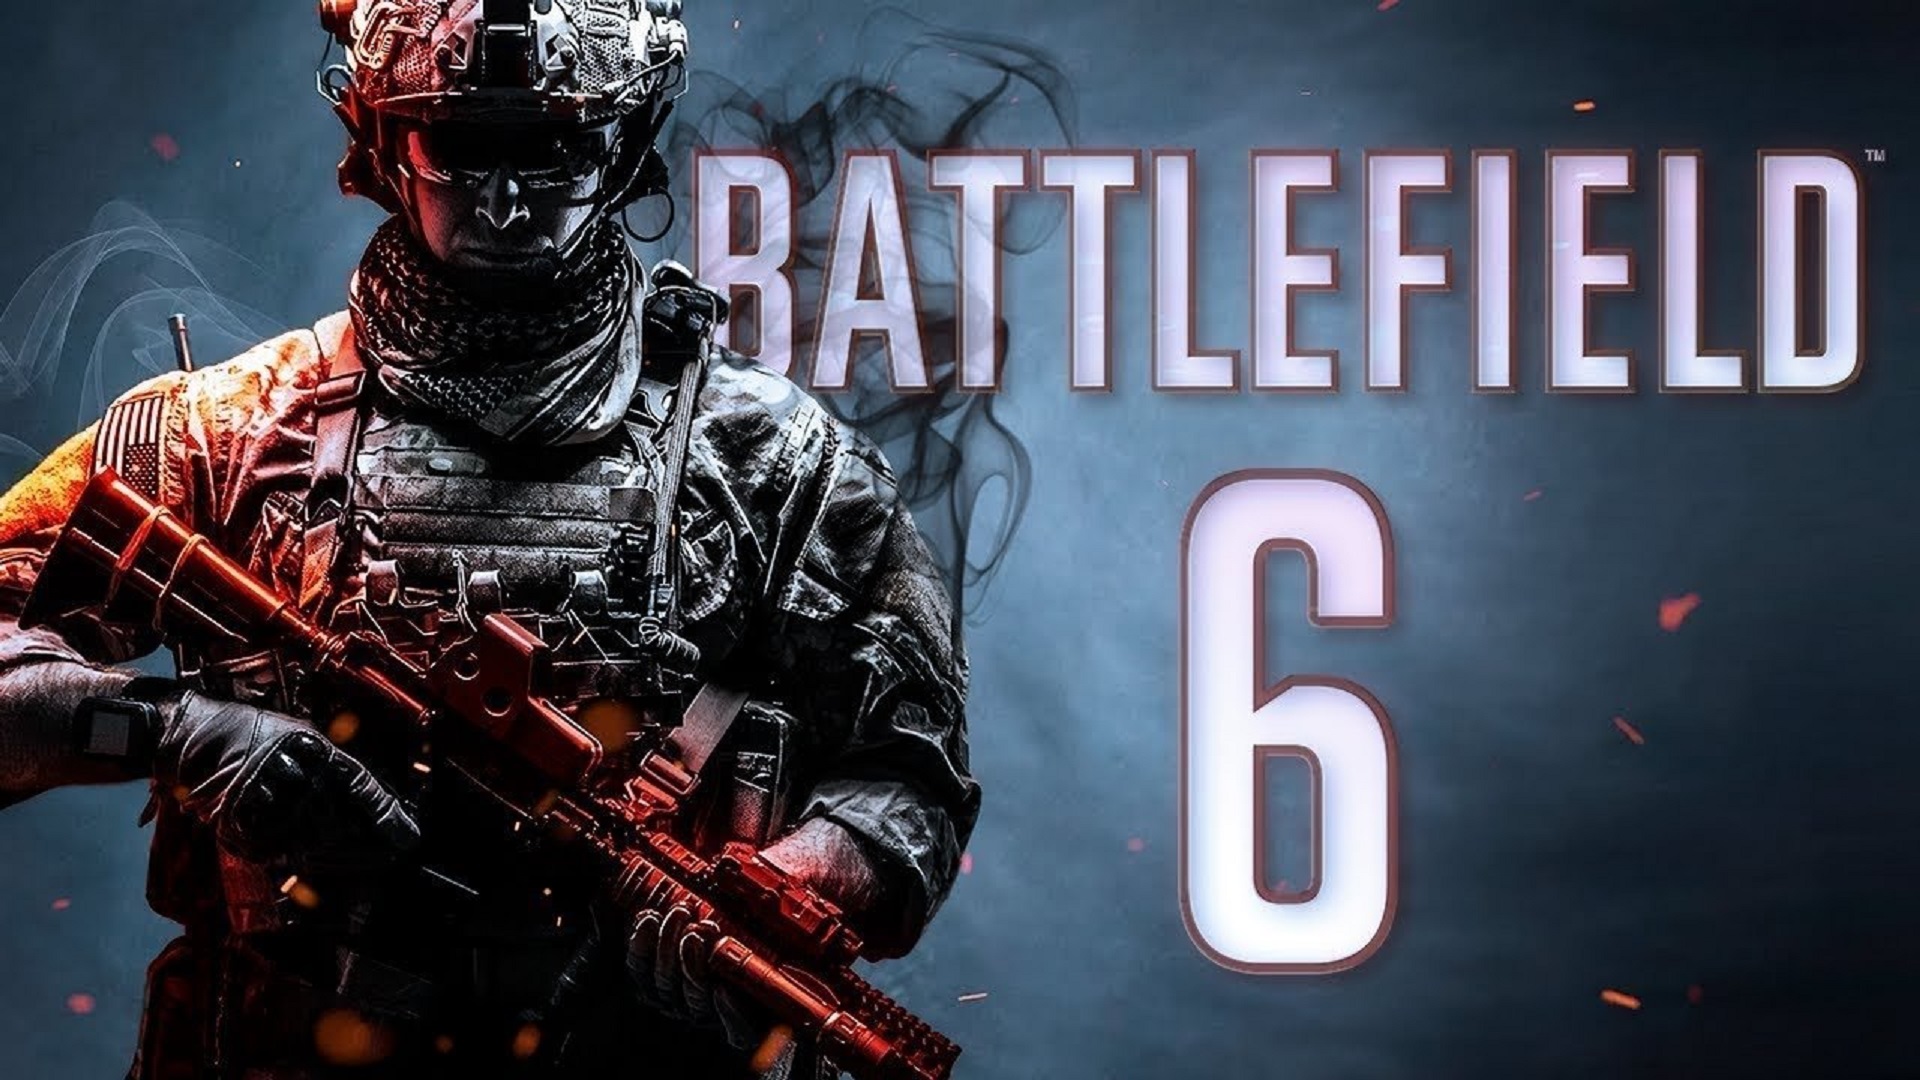 شایعه: نسخه آلفای بازی Battlefield 6 در ماه جولای منتشر خواهد شد